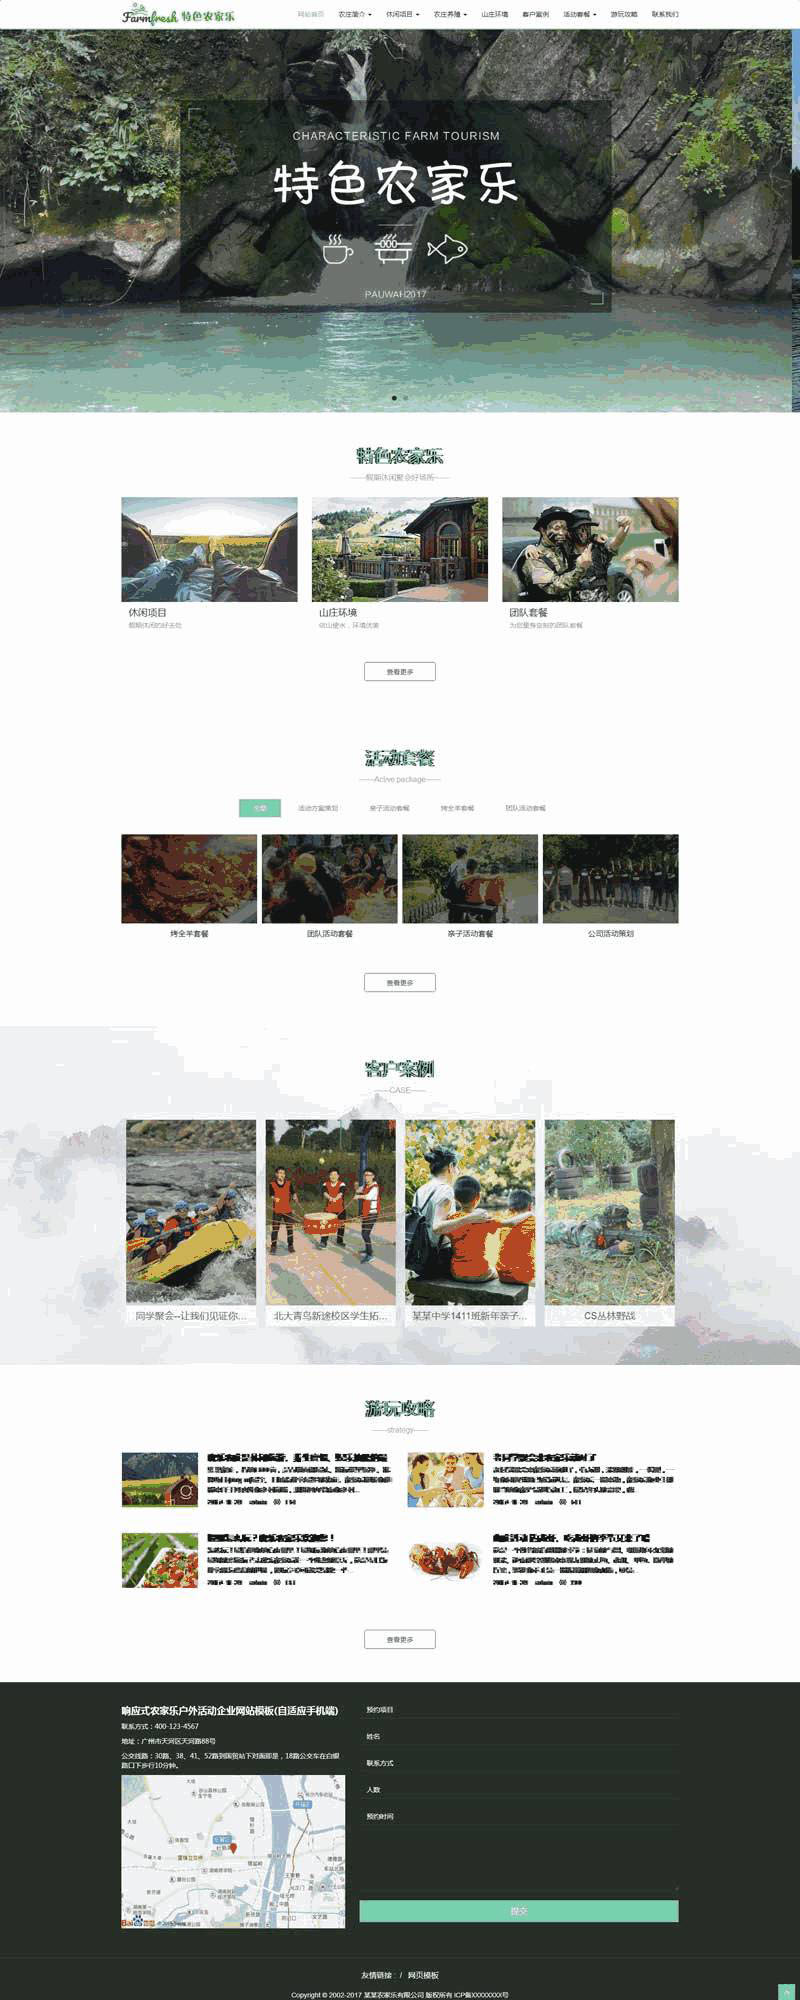 绿色宽屏的农庄旅游休闲网站制作_网站建设模板演示图